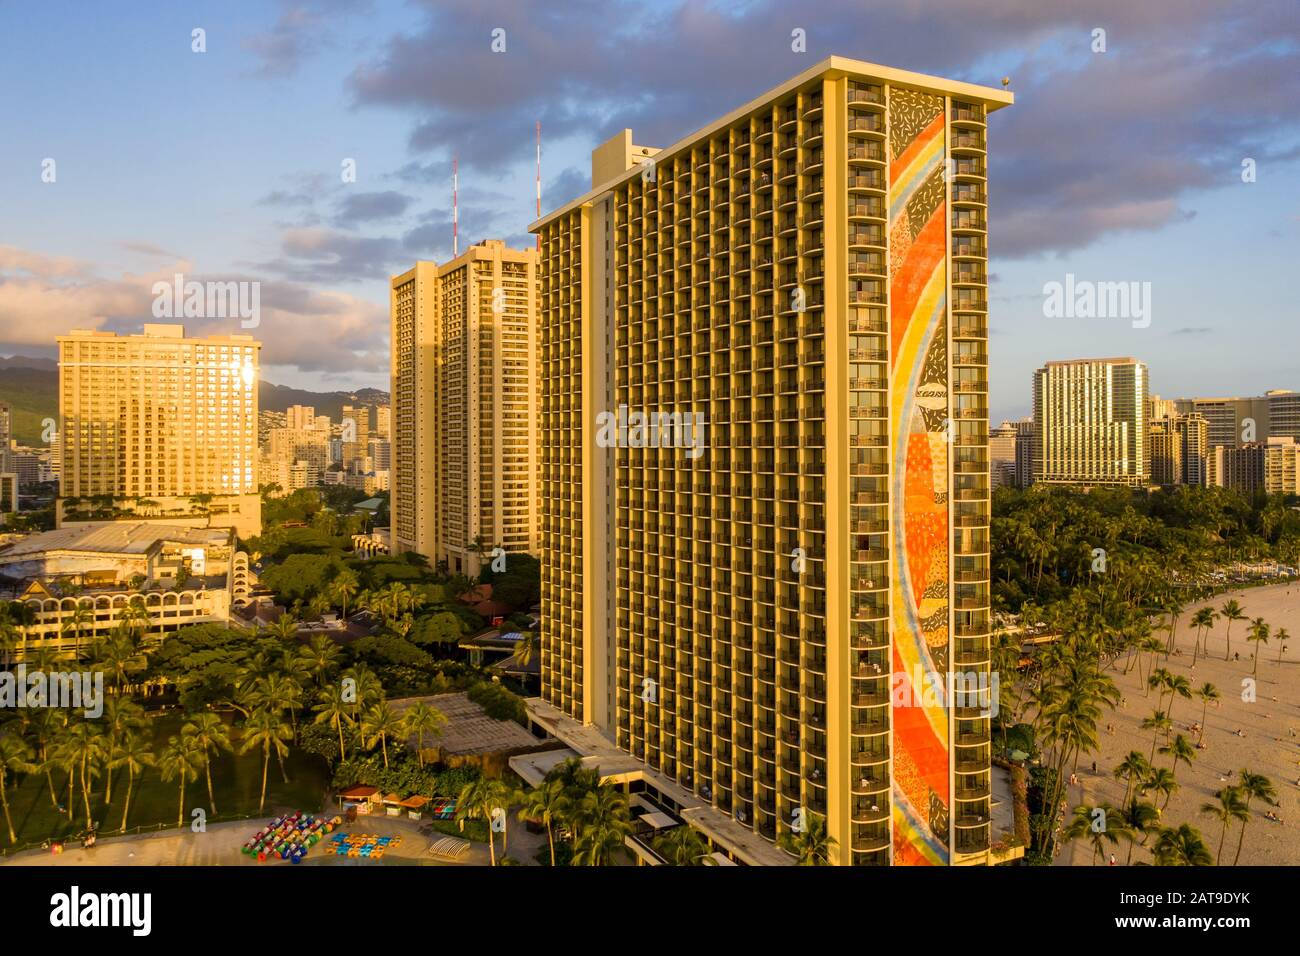 Waikiki, HI - 19 janvier 2020: Vue aérienne de la tour arc-en-ciel à l'avant du Hilton Hawaiian Village sur la plage de Waikiki à Hawaï Banque D'Images